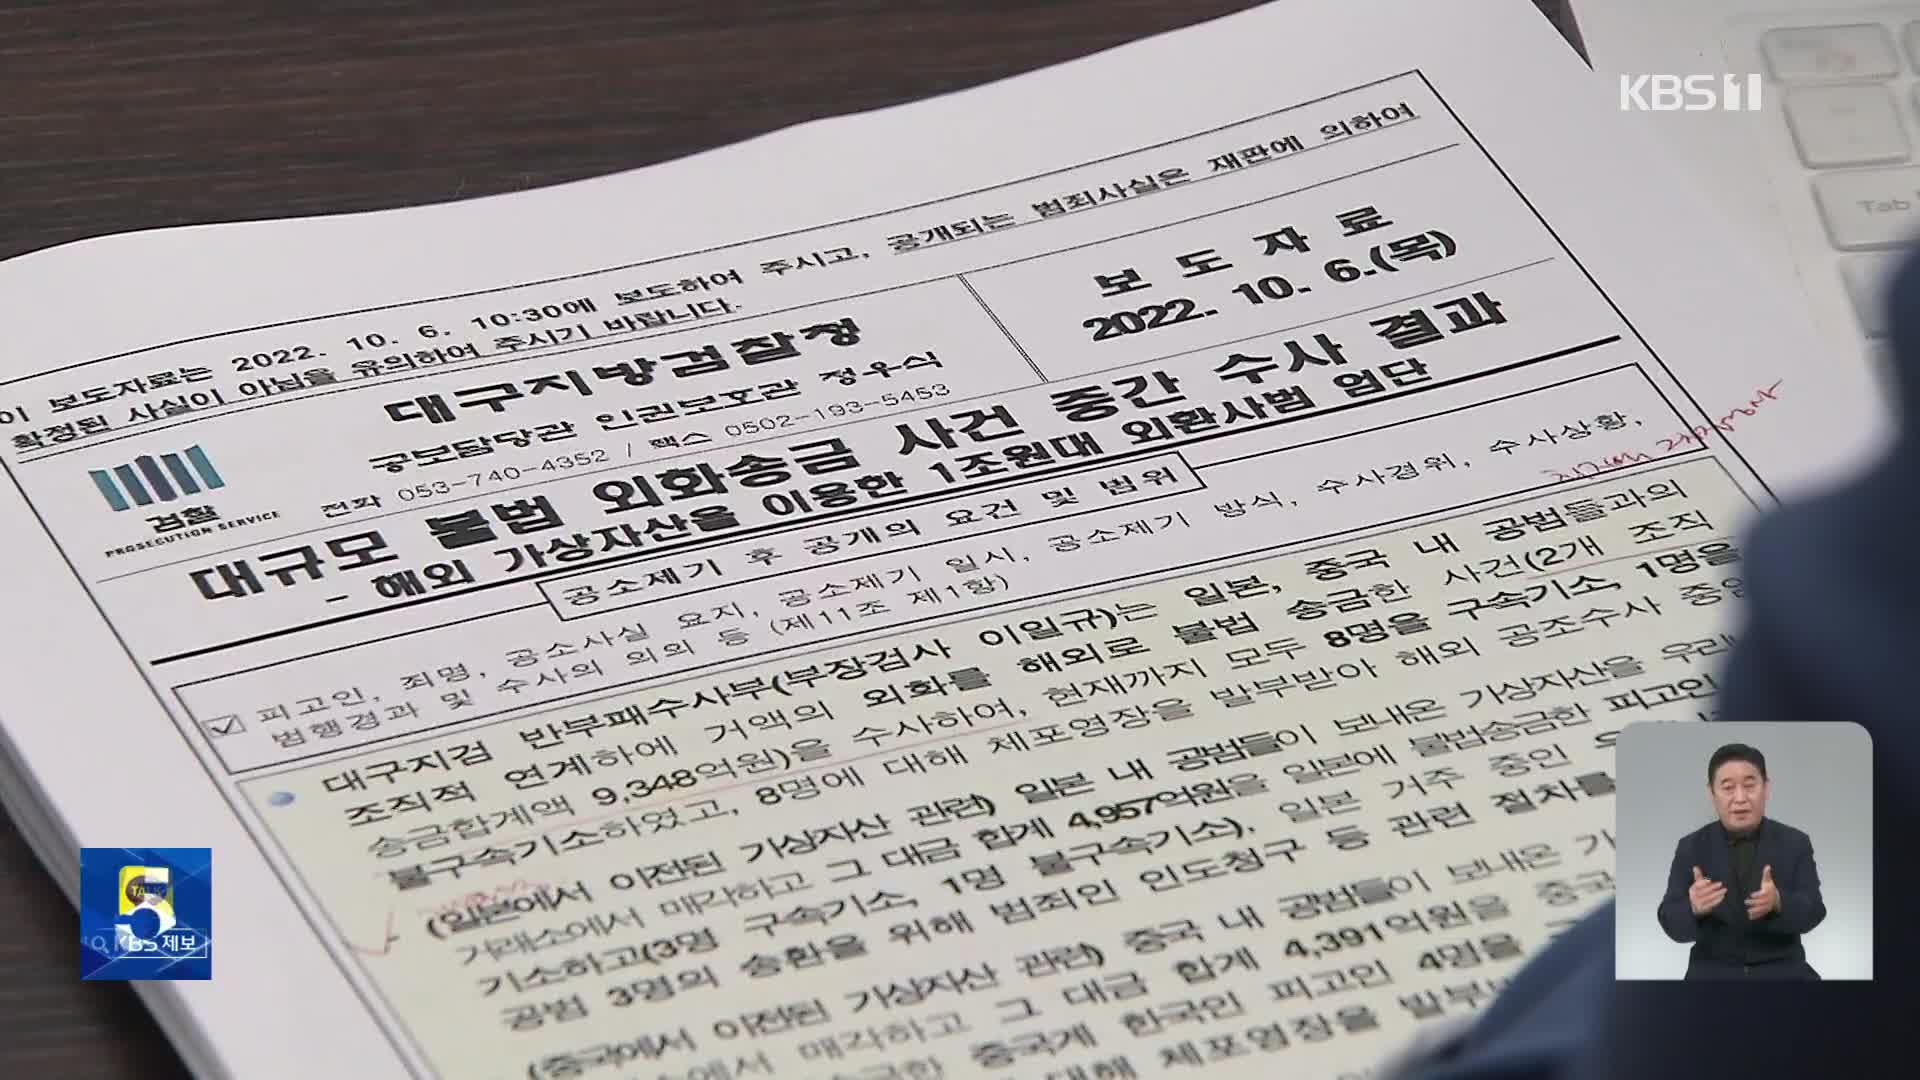 ‘김치 프리미엄’ 노려 9천3백억 원대 불법 외환거래 일당 기소